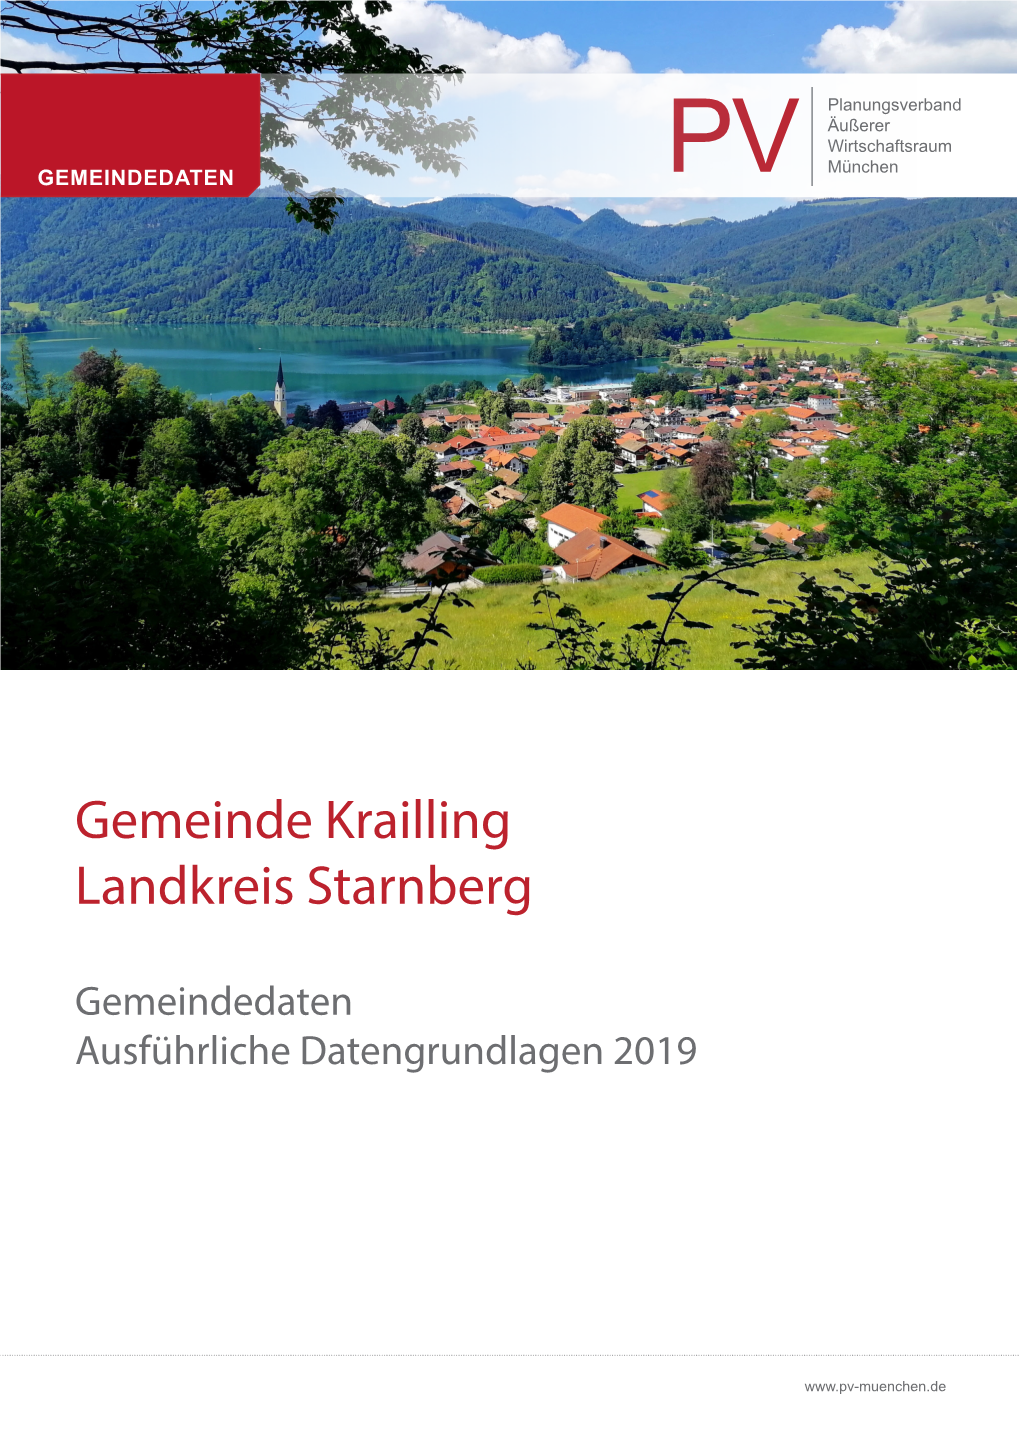 Gemeinde Krailling Landkreis Starnberg